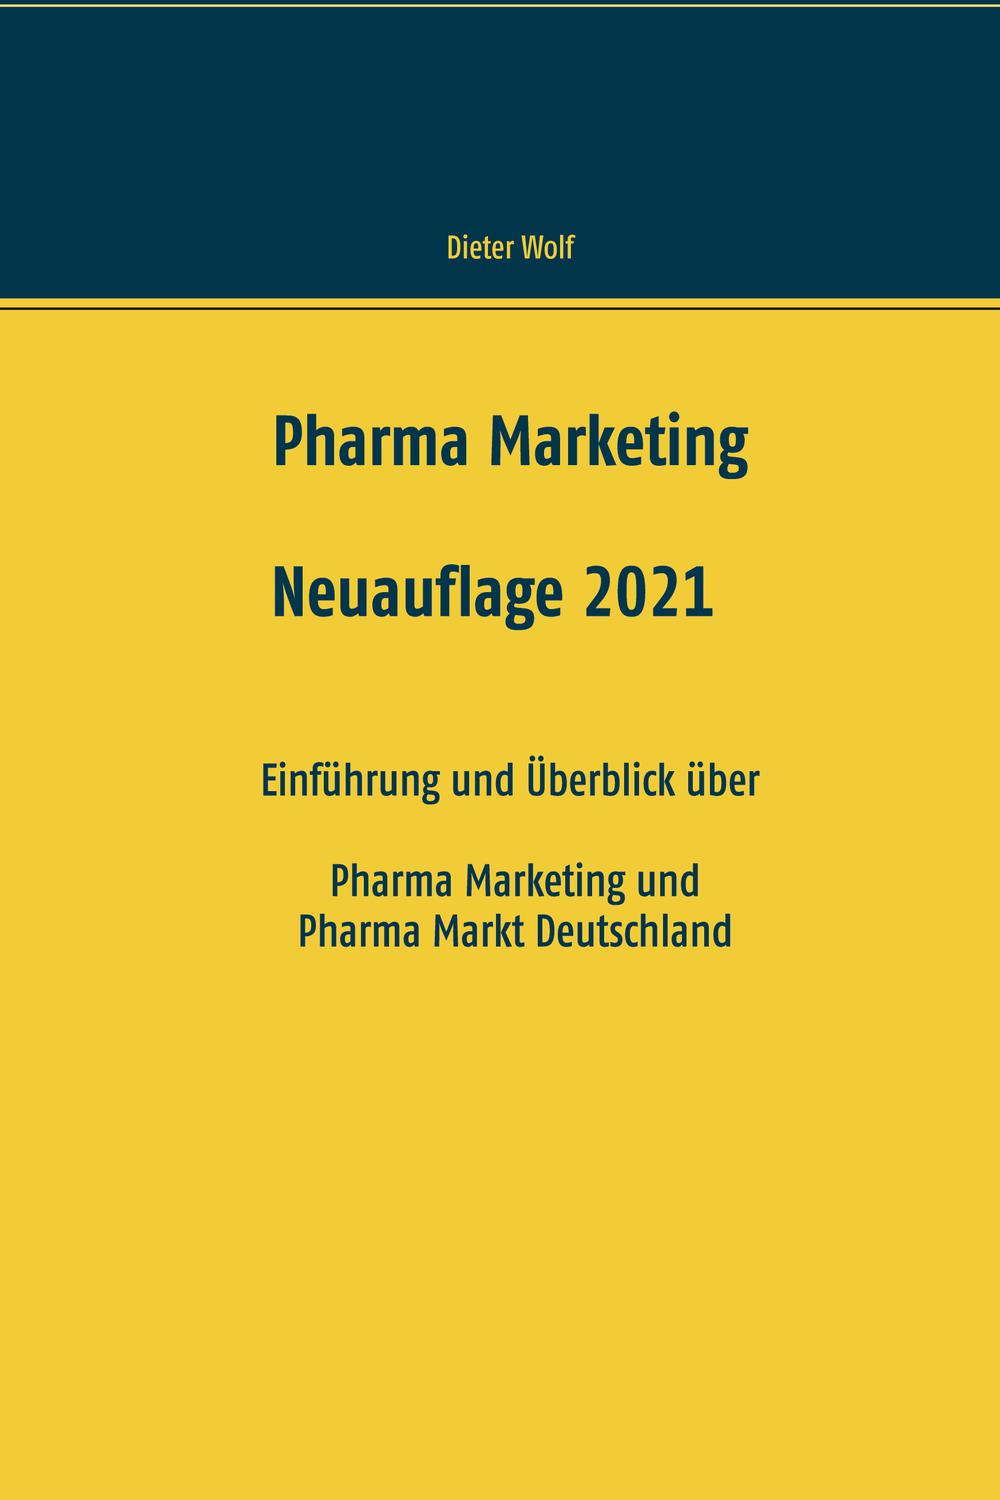 Pharma Marketing - Dieter Wolf